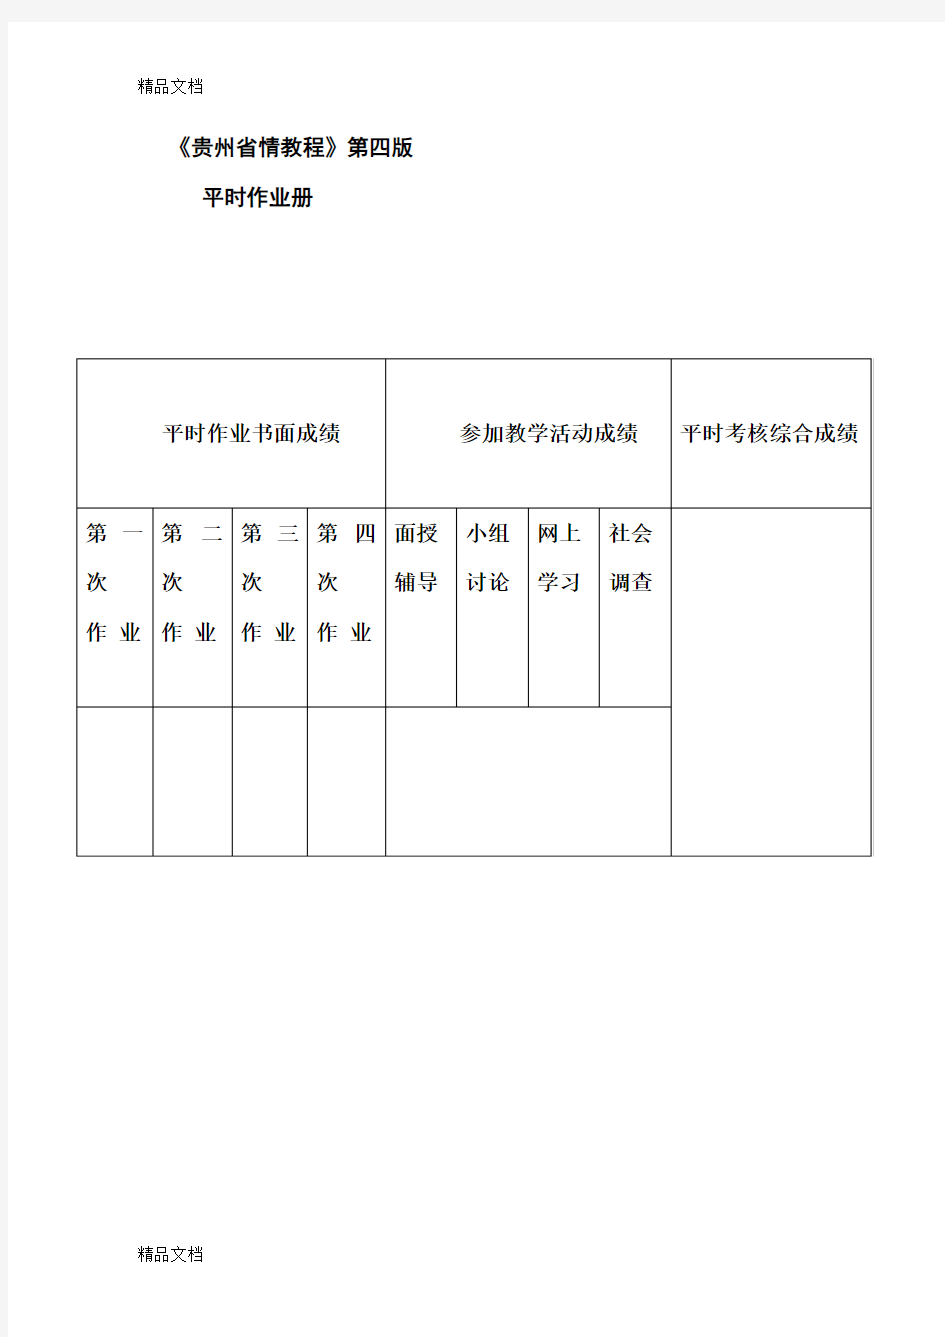 贵州省情(地域文化)第四版平时作业答案(1)说课材料